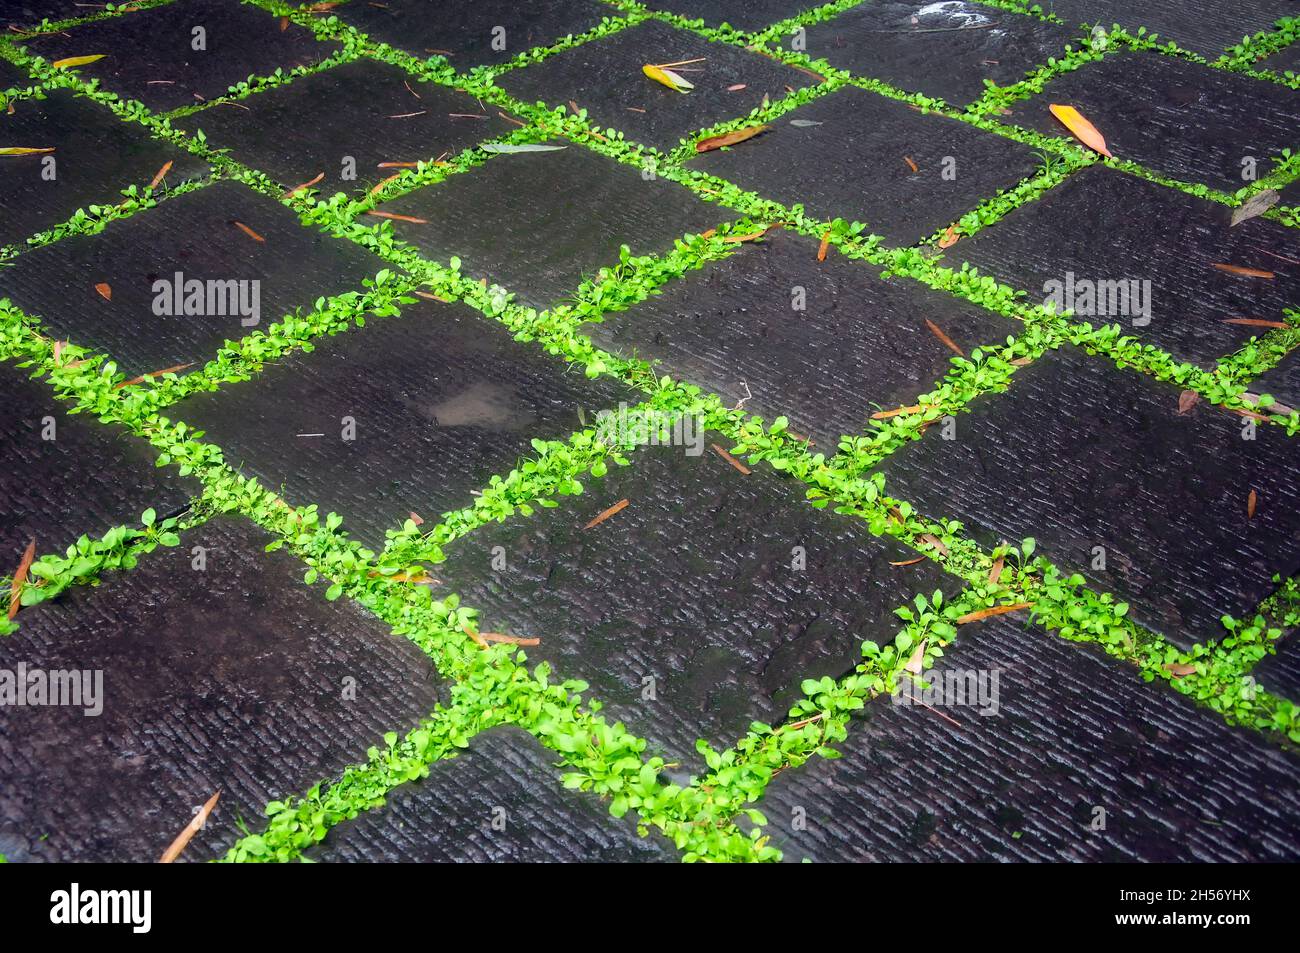 Des plantes vertes qui poussent dans les fissures entre les pierres noires créant un arrière-plan abstrait à Chengdu, en chine. Banque D'Images